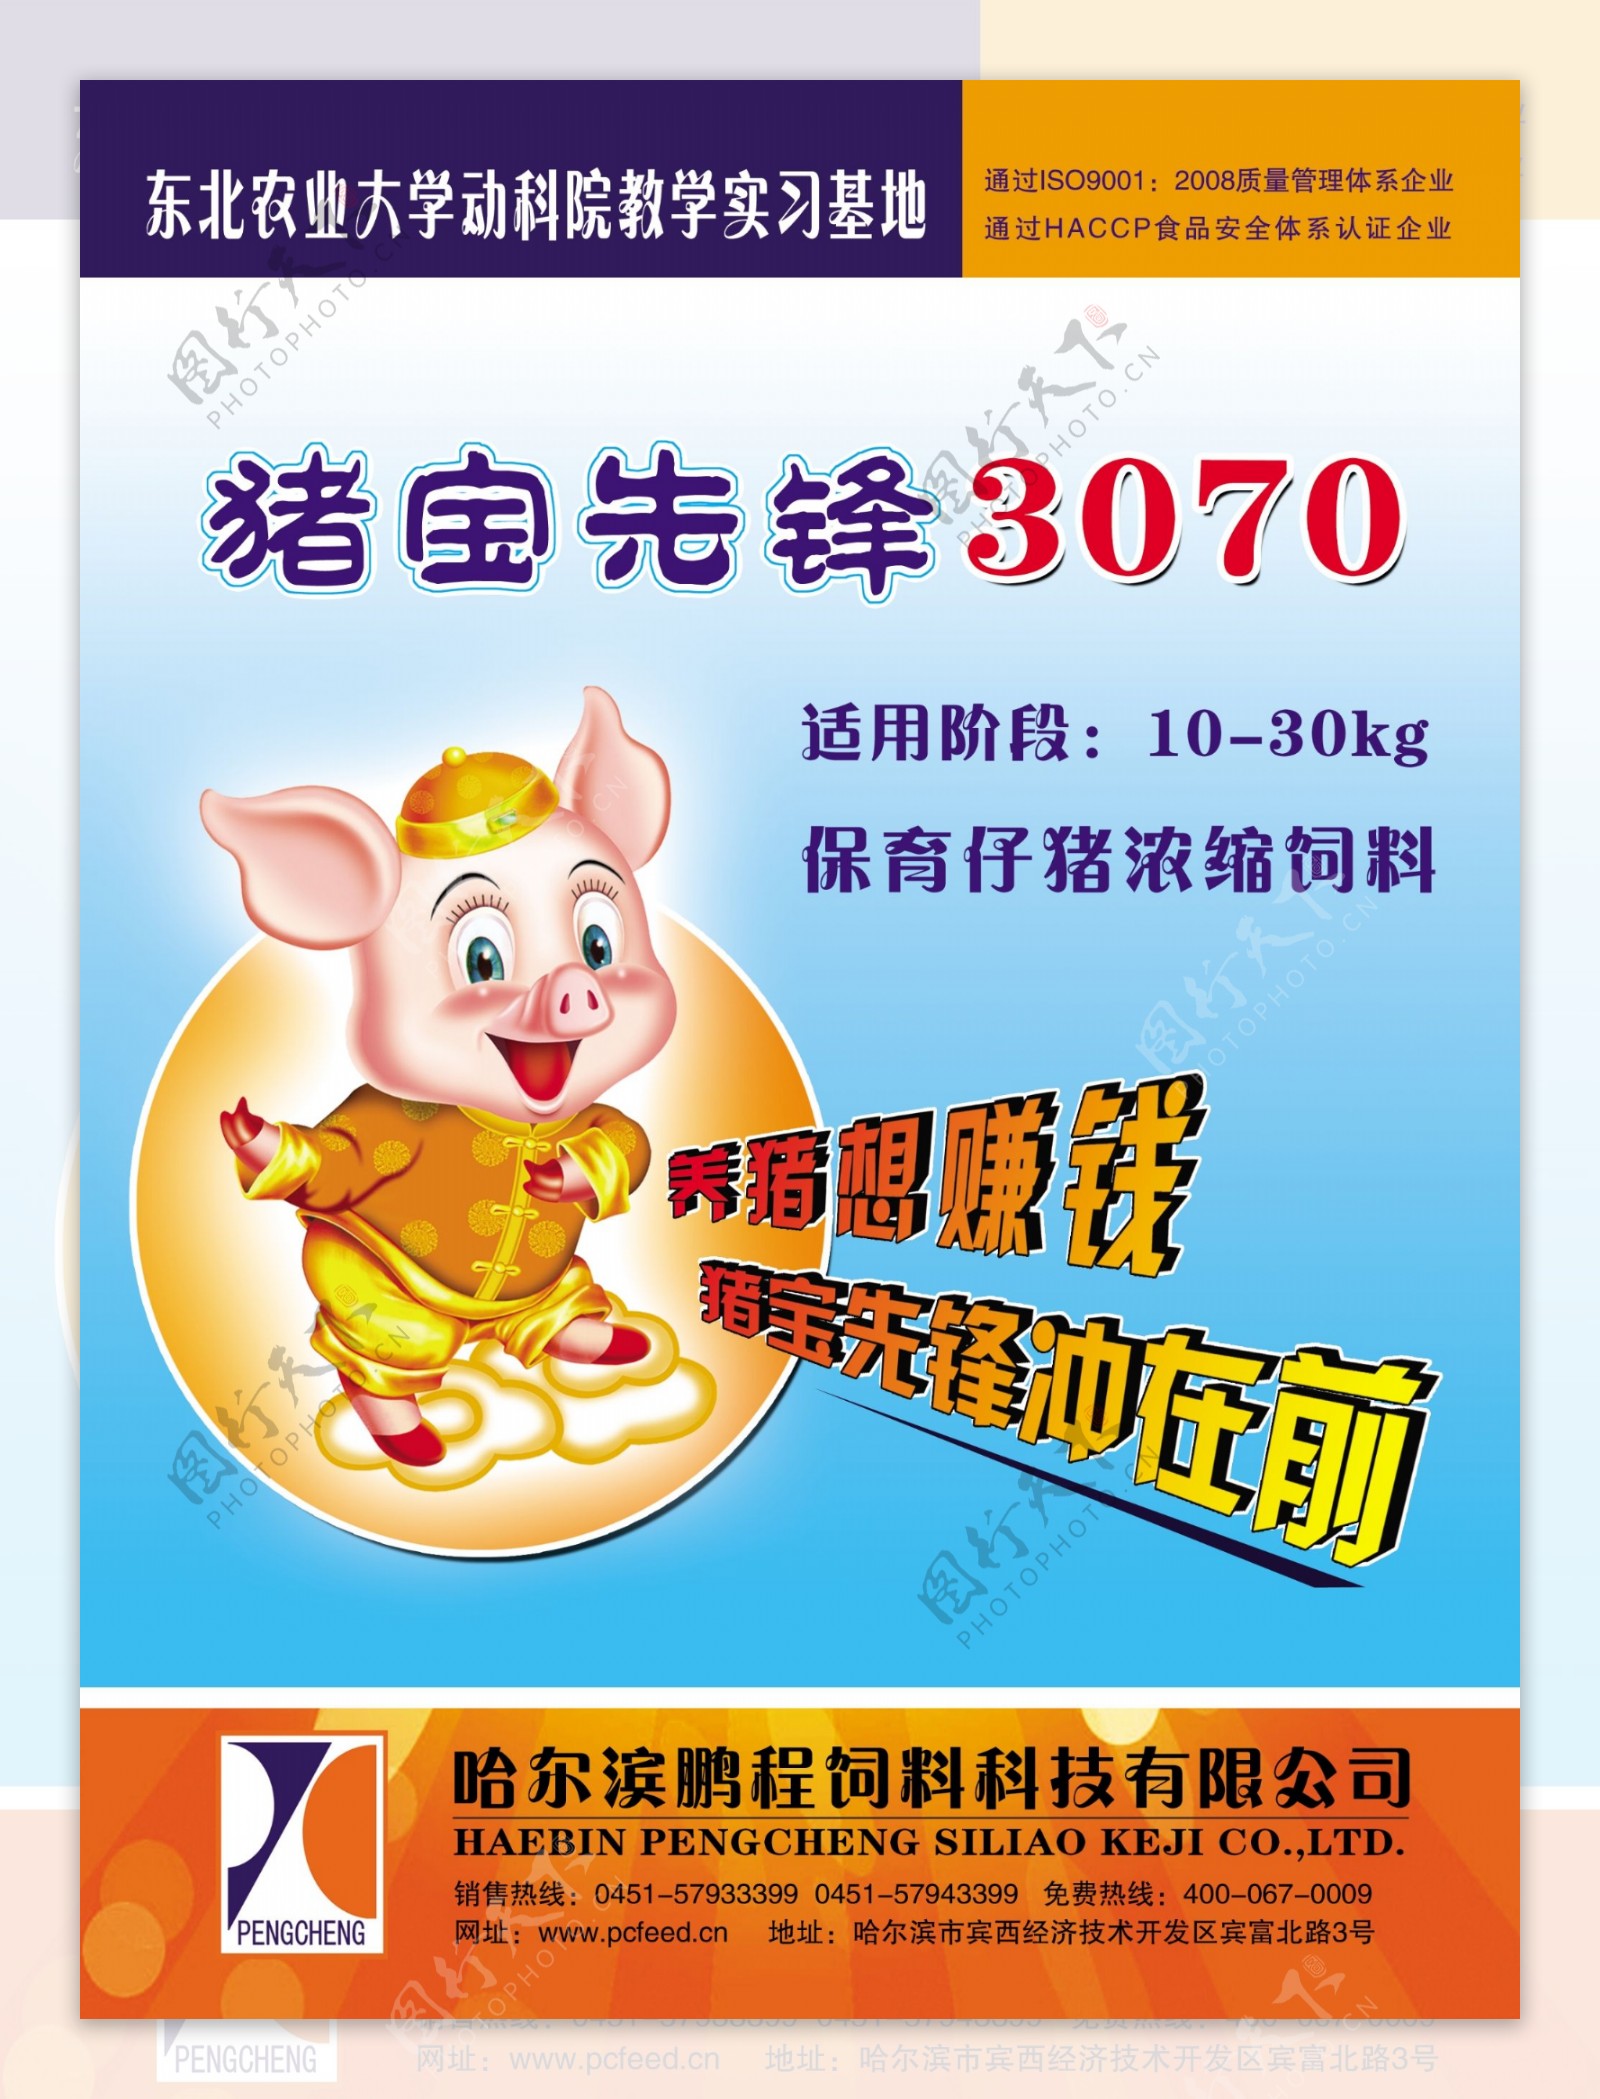 猪饲料宣传广告图片